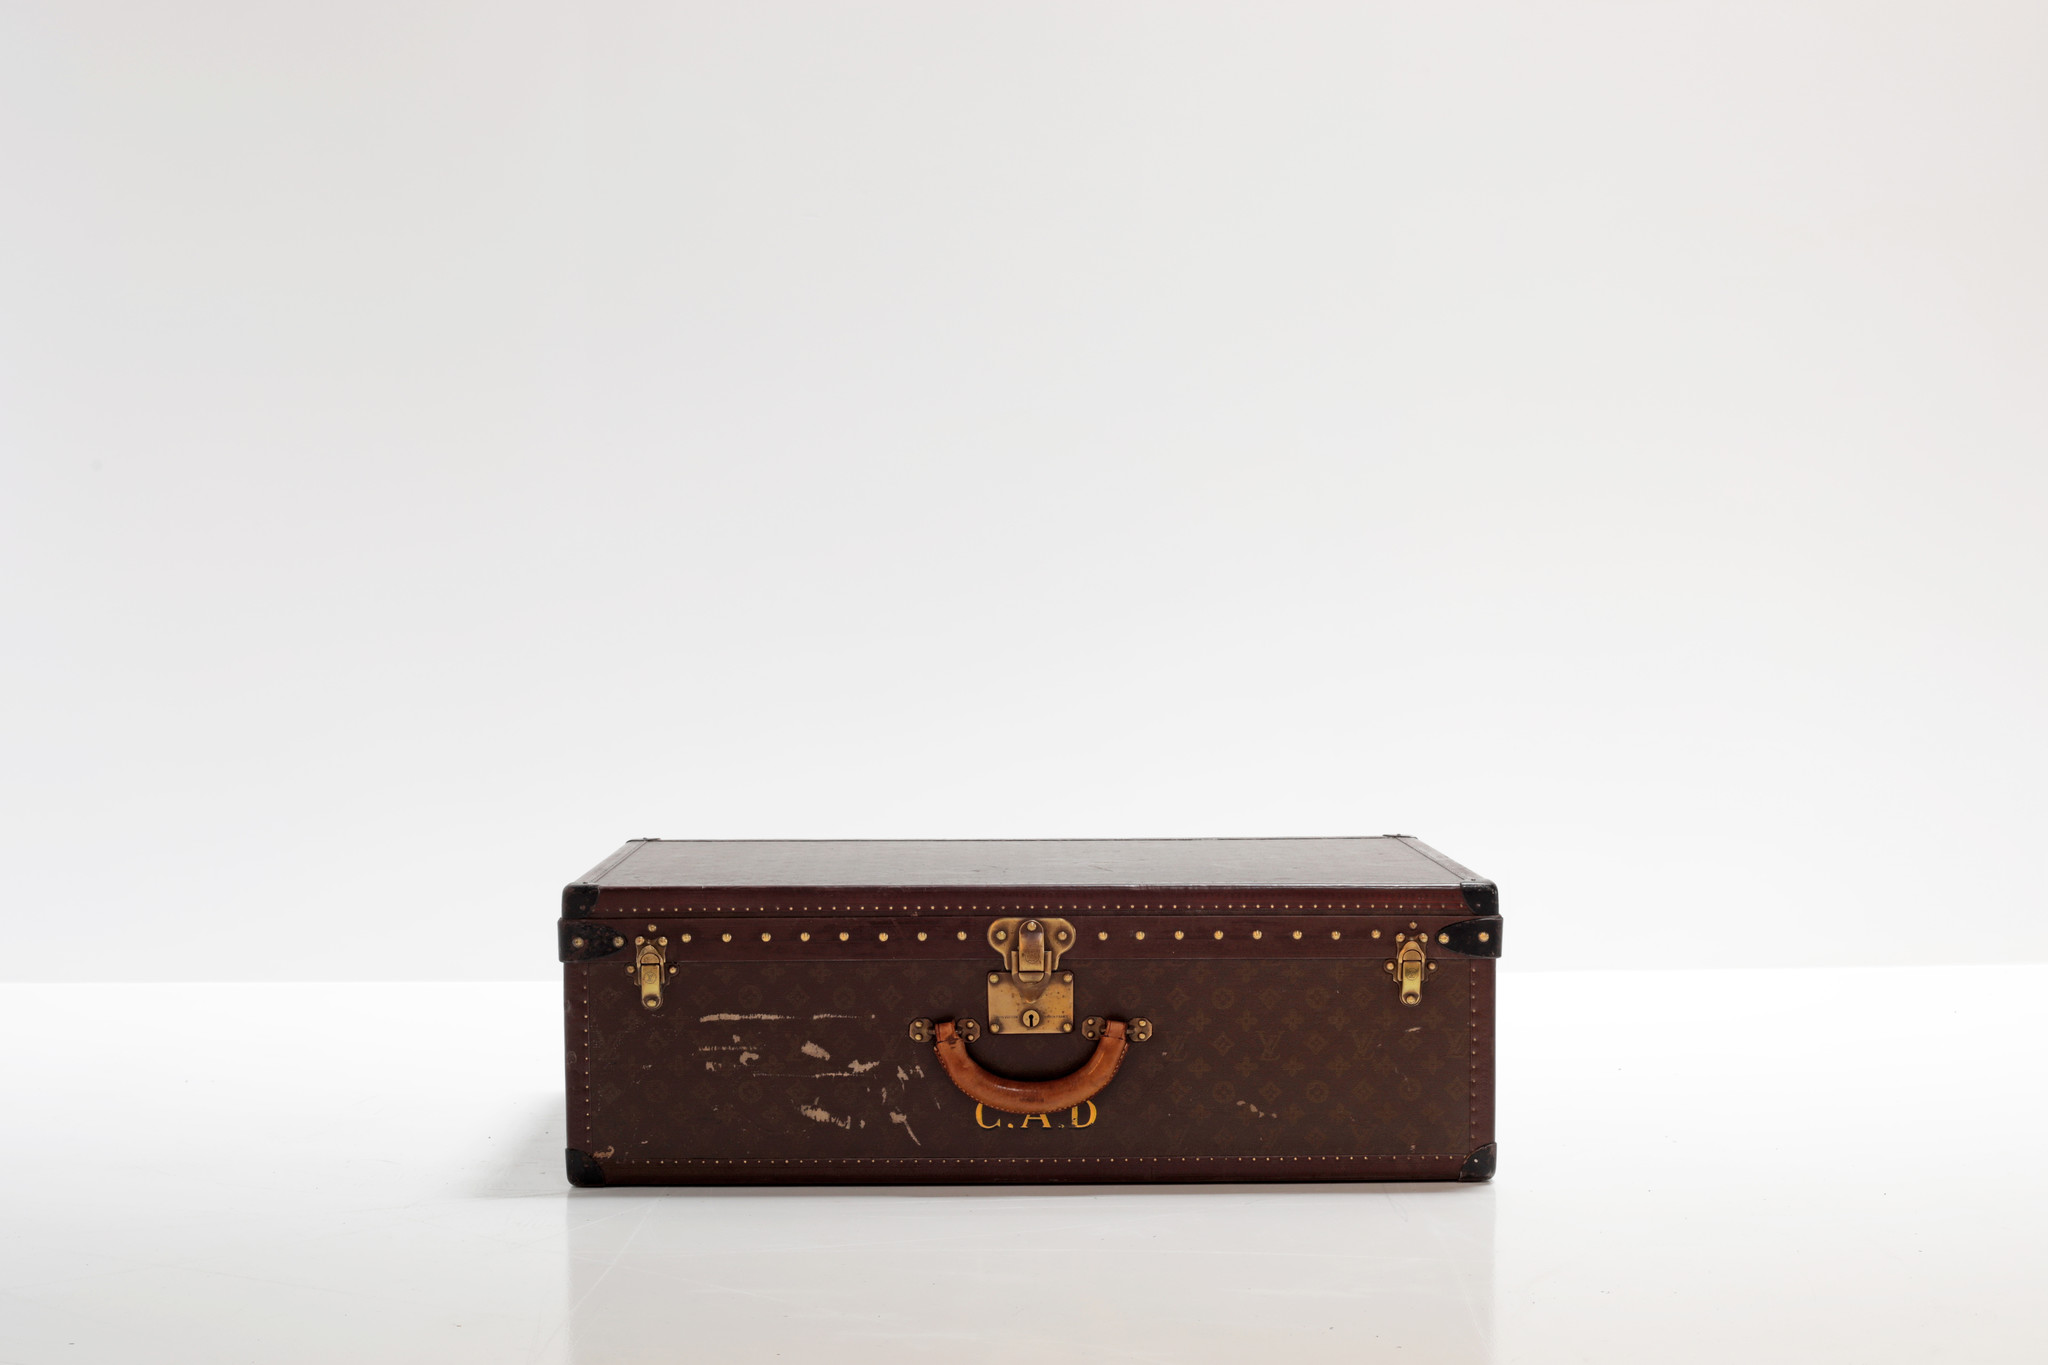 Louis Vuitton valies monogram circa 1940